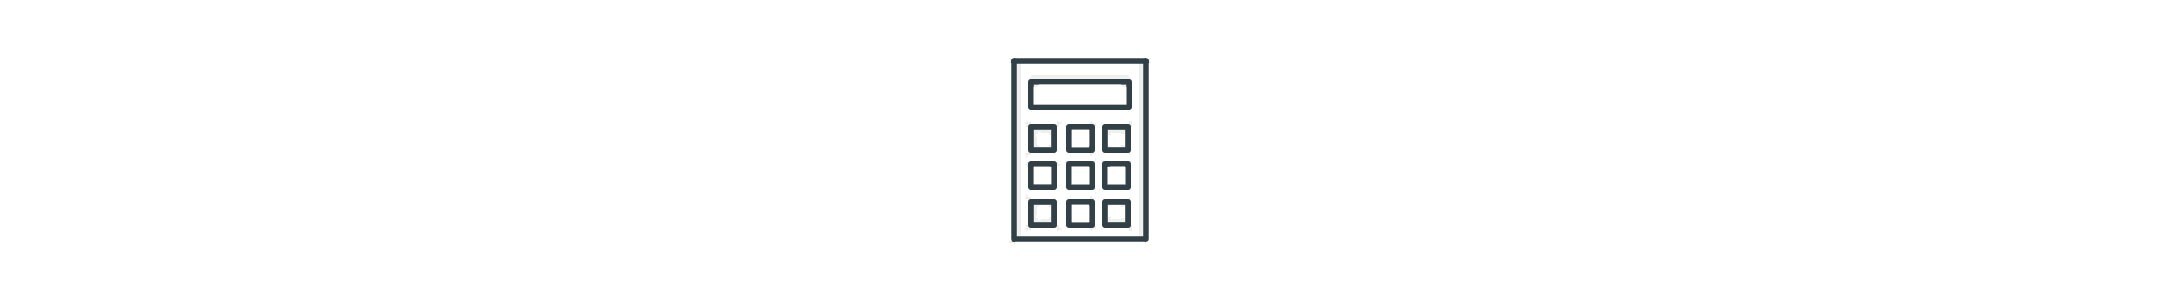 Calculator icon shown here.